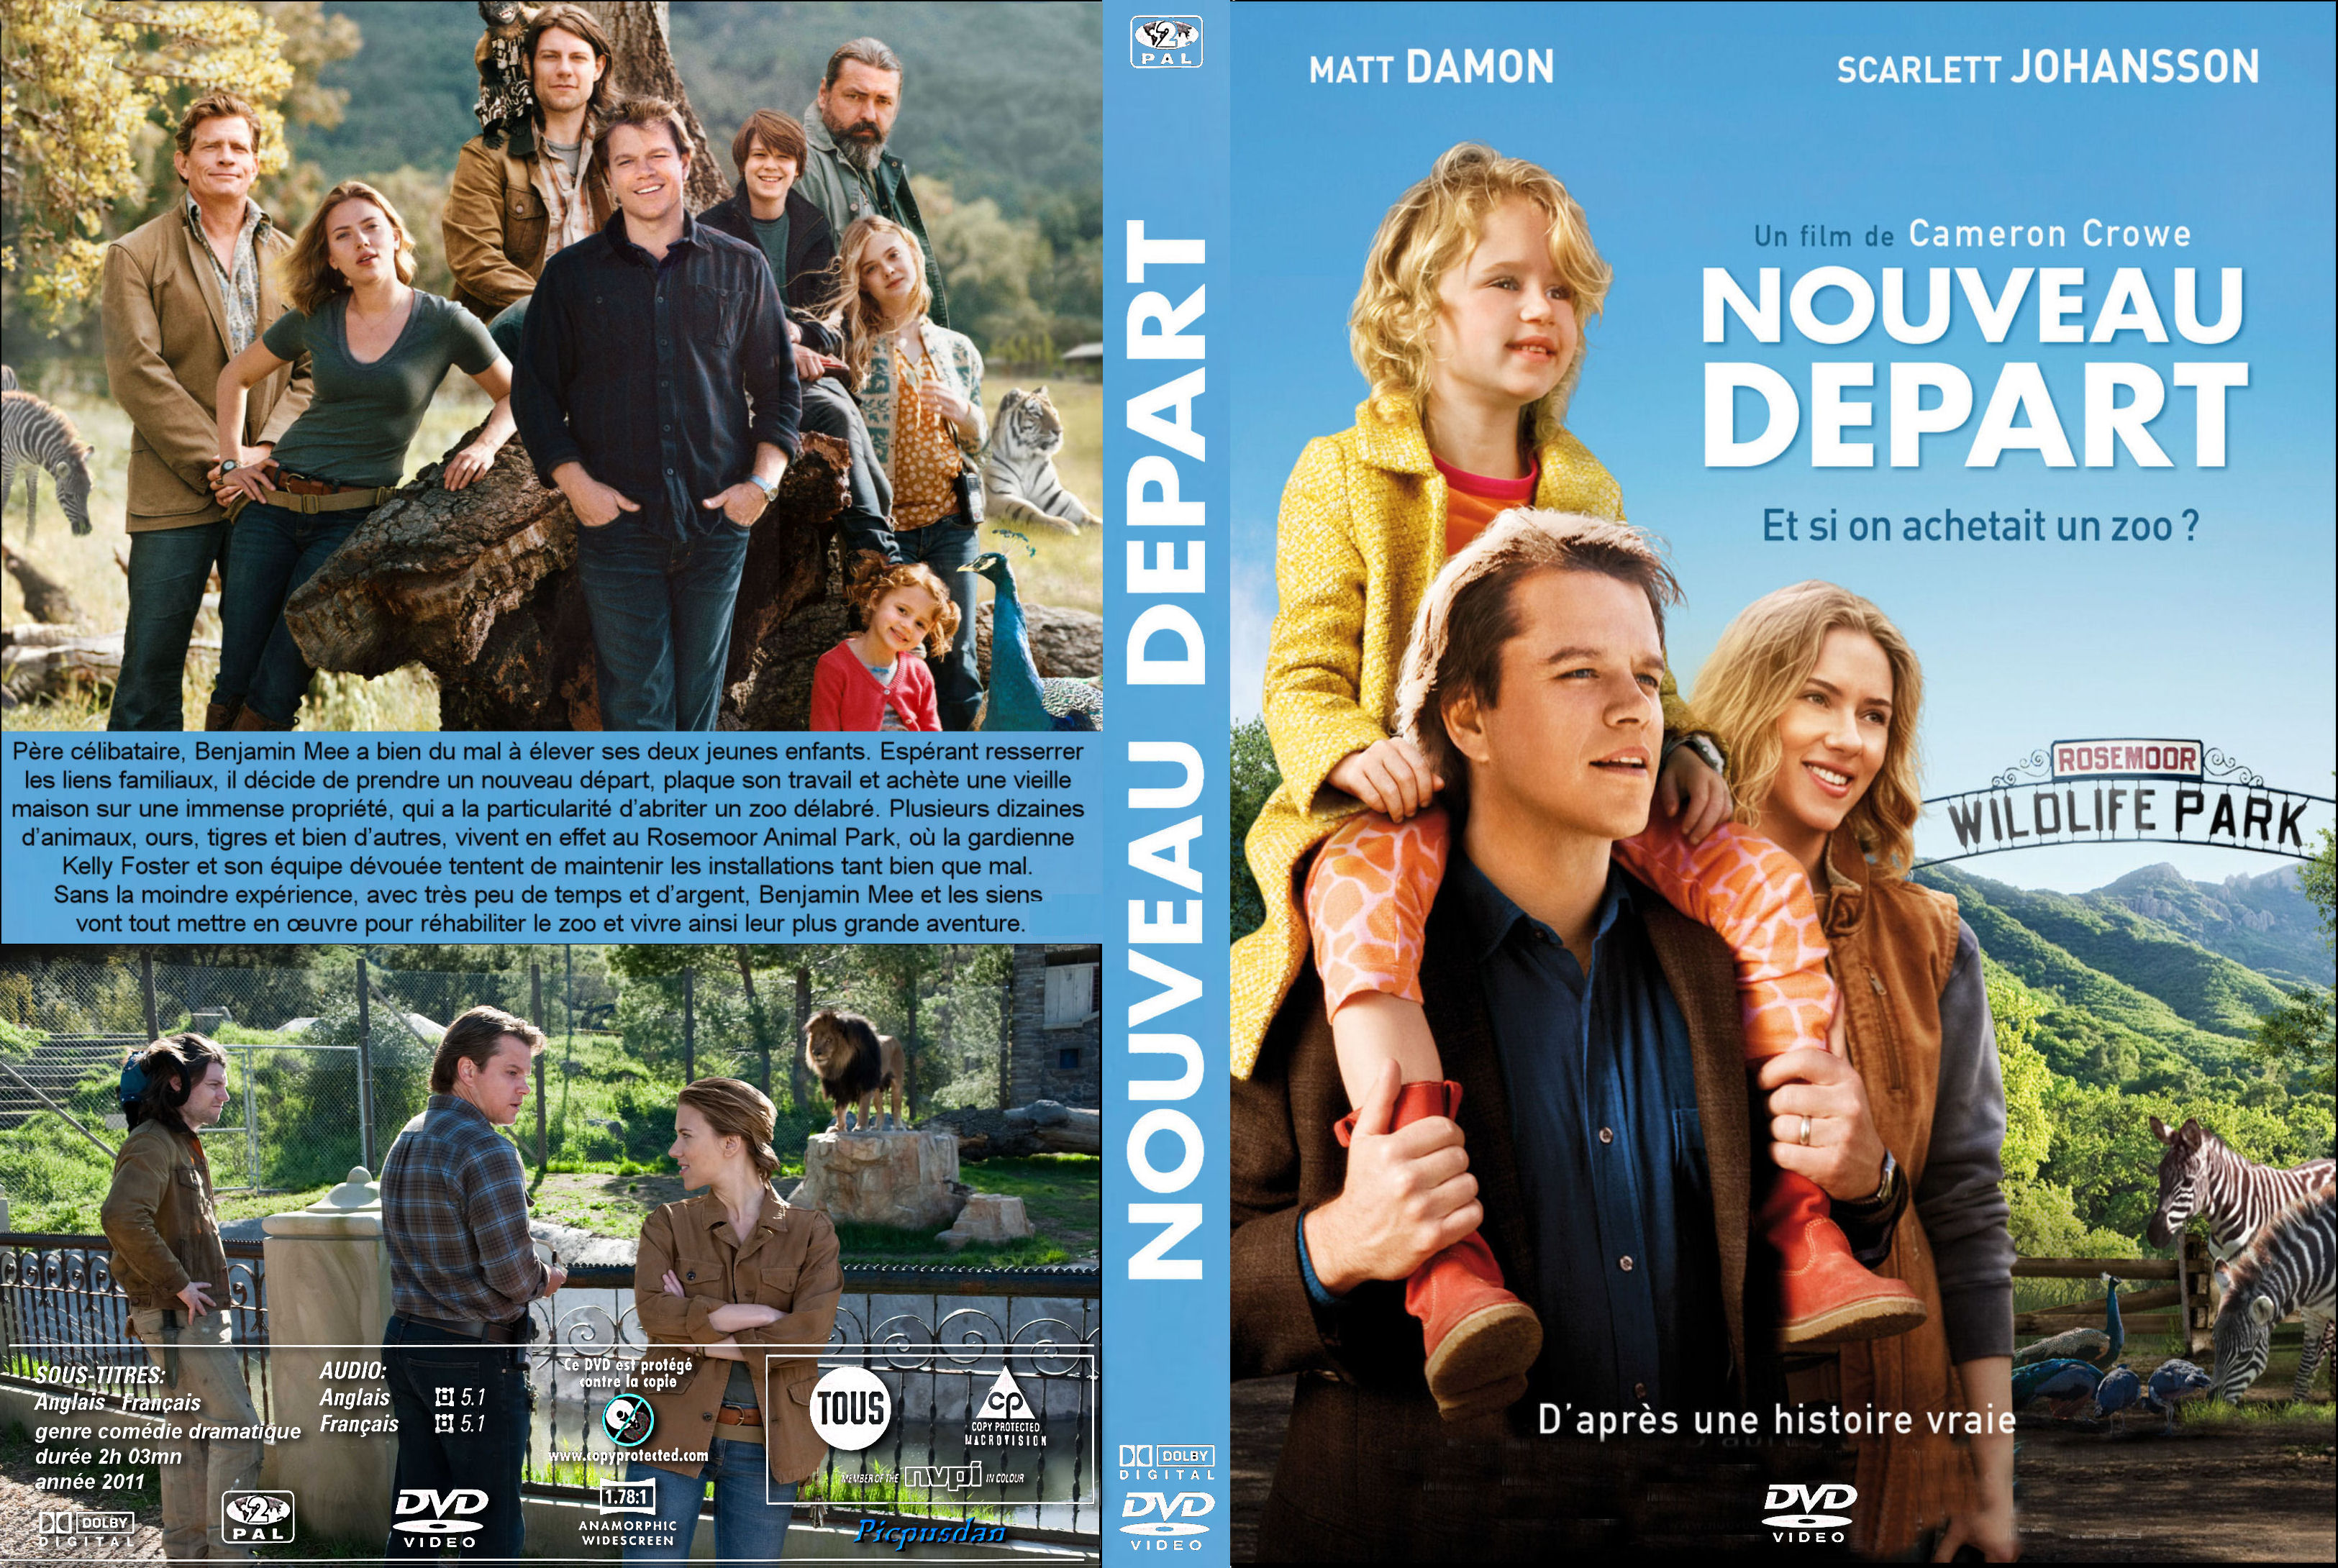 Jaquette DVD Nouveau Dpart custom